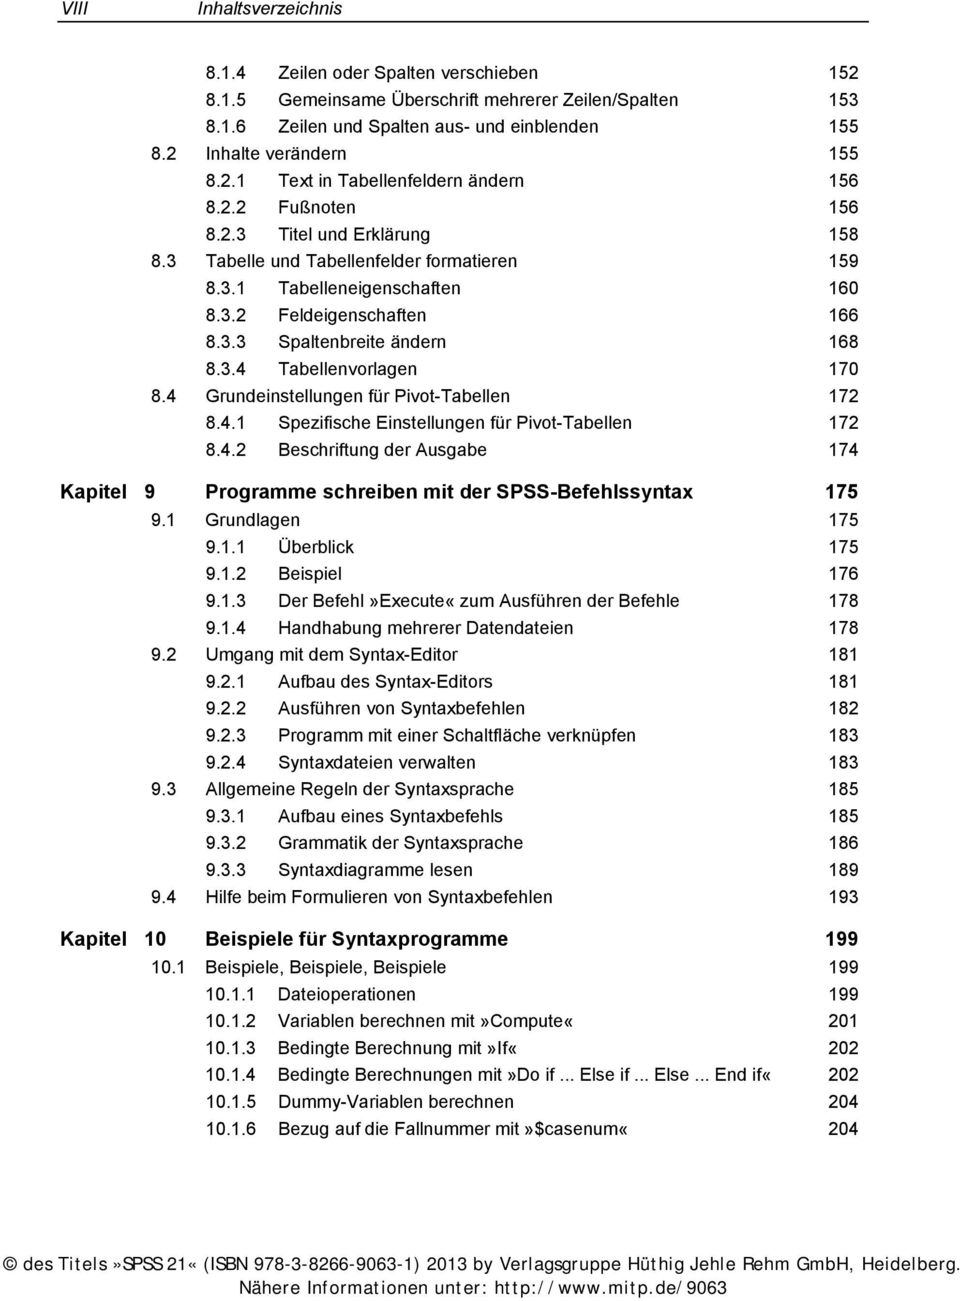 3.4 Tabellenvorlagen 170 8.4 Grundeinstellungen für Pivot-Tabellen 172 8.4.1 Spezifische Einstellungen für Pivot-Tabellen 172 8.4.2 Beschriftung der Ausgabe 174 Kapitel 9 Programme schreiben mit der SPSS-Befehlssyntax 175 9.